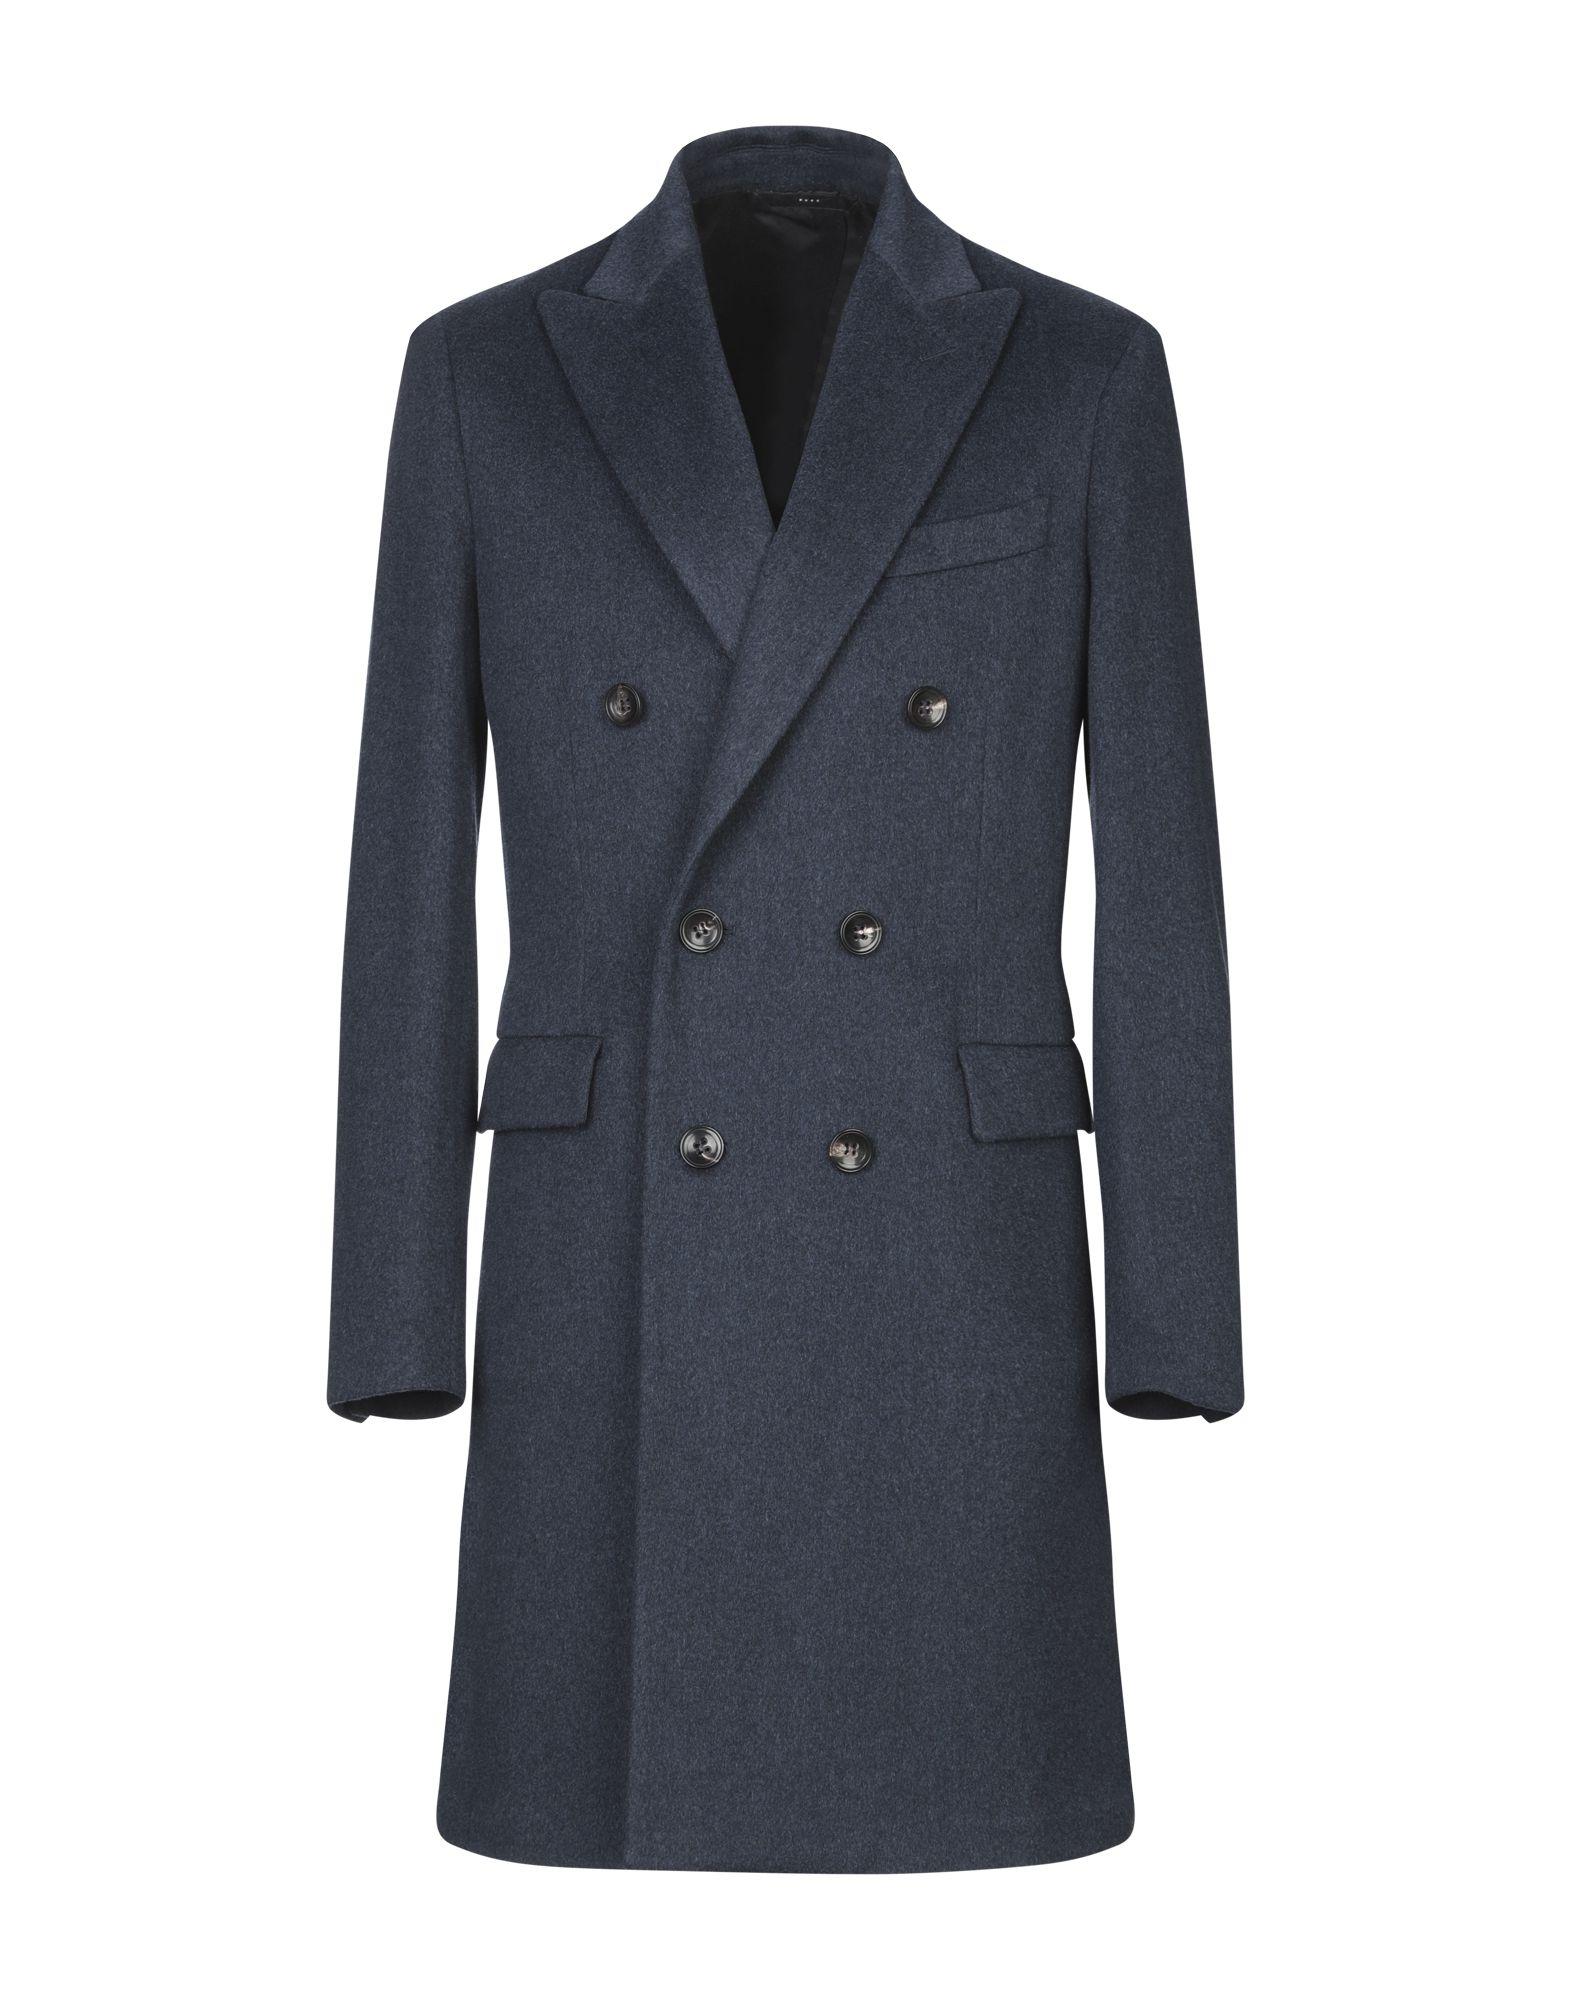 Hevò Wool Coat in Dark Blue (Blue) for Men - Lyst